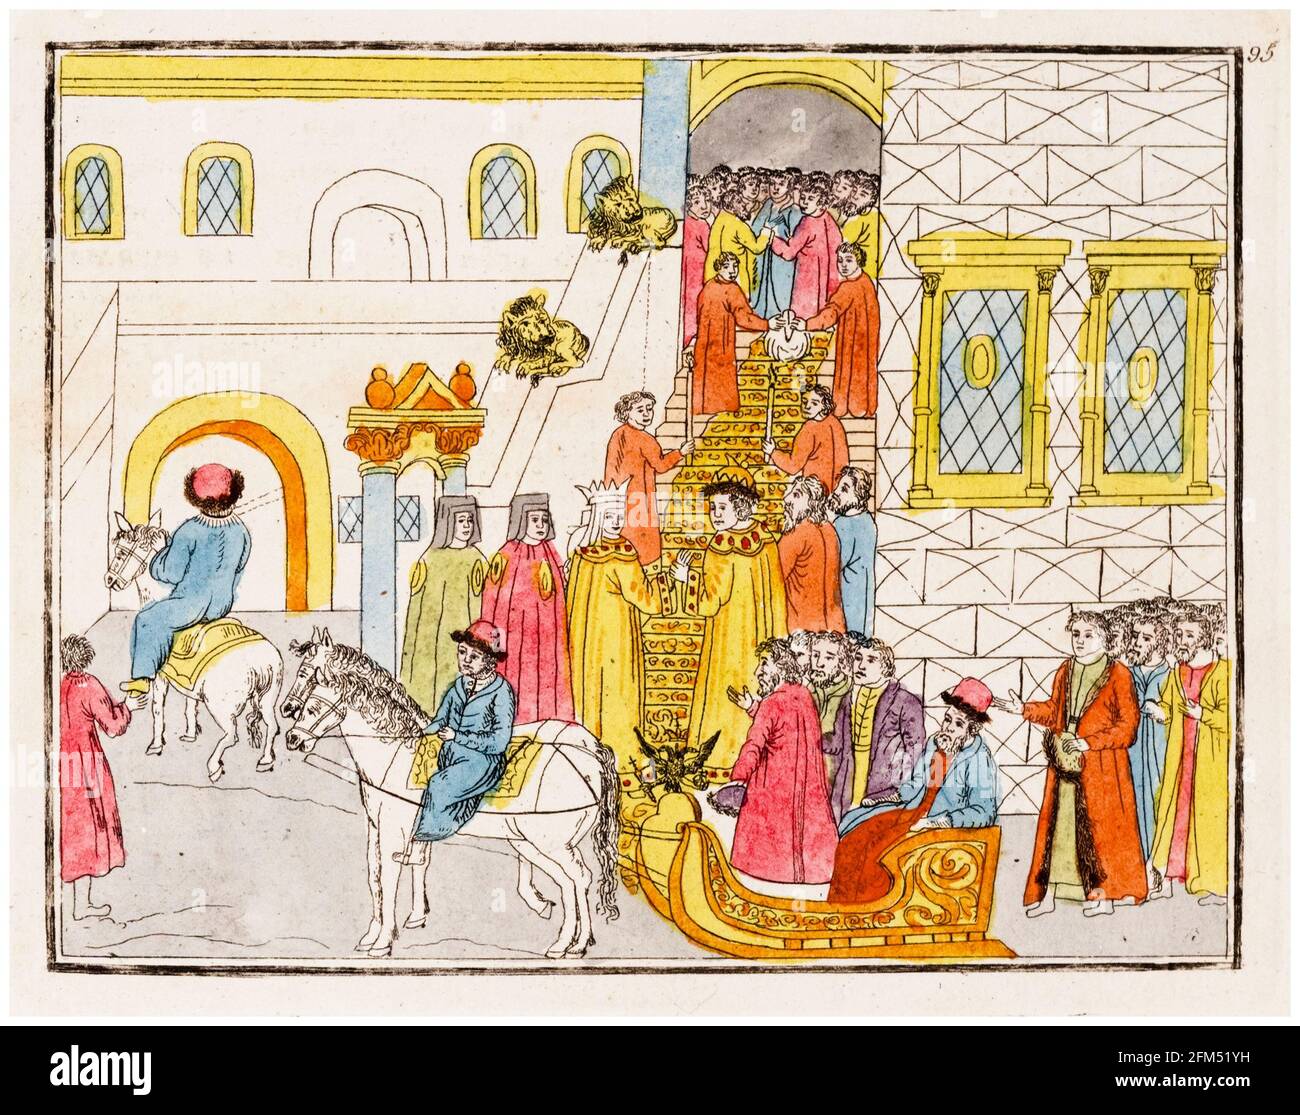 Tsar Michael i di Russia (1596-1645) e Tsarina Eudoxia Streshnyova (1608-1645), arrivano al loro matrimonio su una slitta, illustrazione circa 1810 Foto Stock